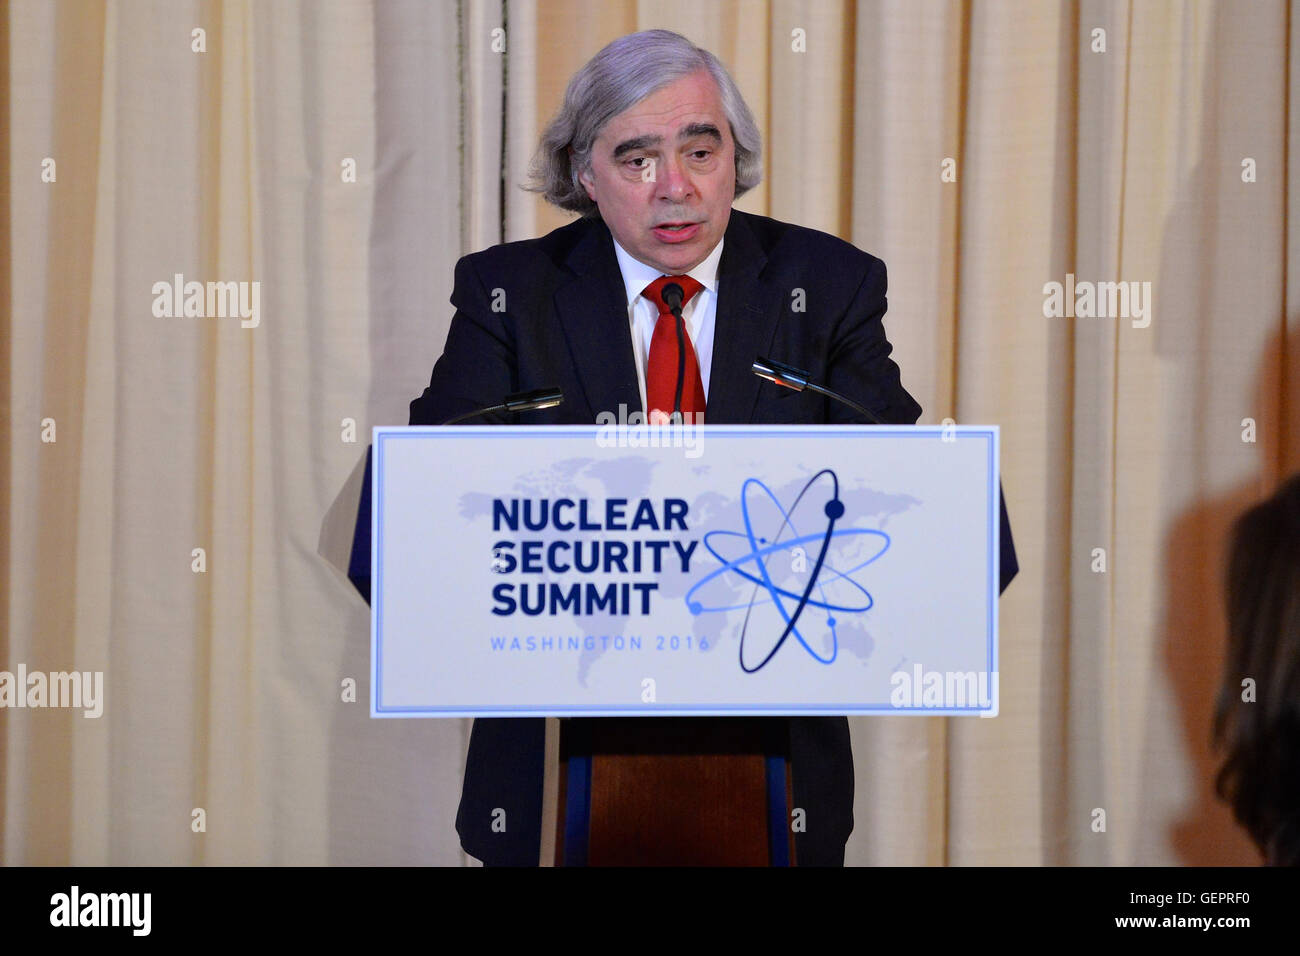 Le Secrétaire de l'énergie, Moniz prononce une allocution lors d'un dîner de travail qu'il Lois avec Kerry Secrétaire pour le 2016 Sommet sur la sécurité nucléaire à Washington Banque D'Images